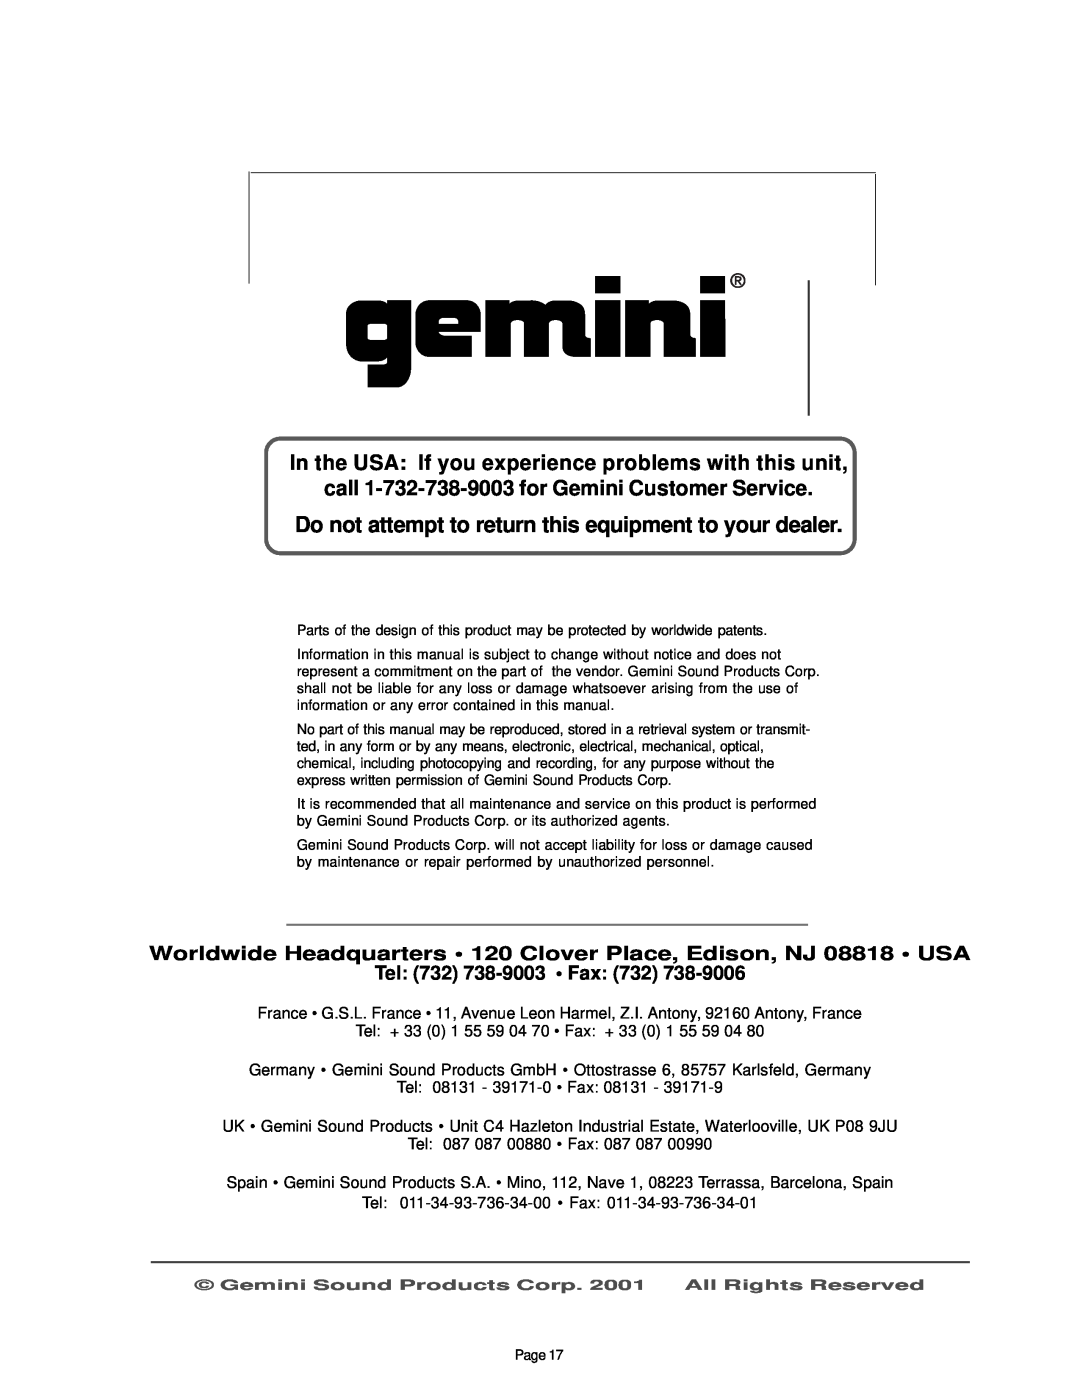 Gemini CDJ-30 manual call 1-732-738-9003for Gemini Customer Service, Tel 732 738-9003 Fax 